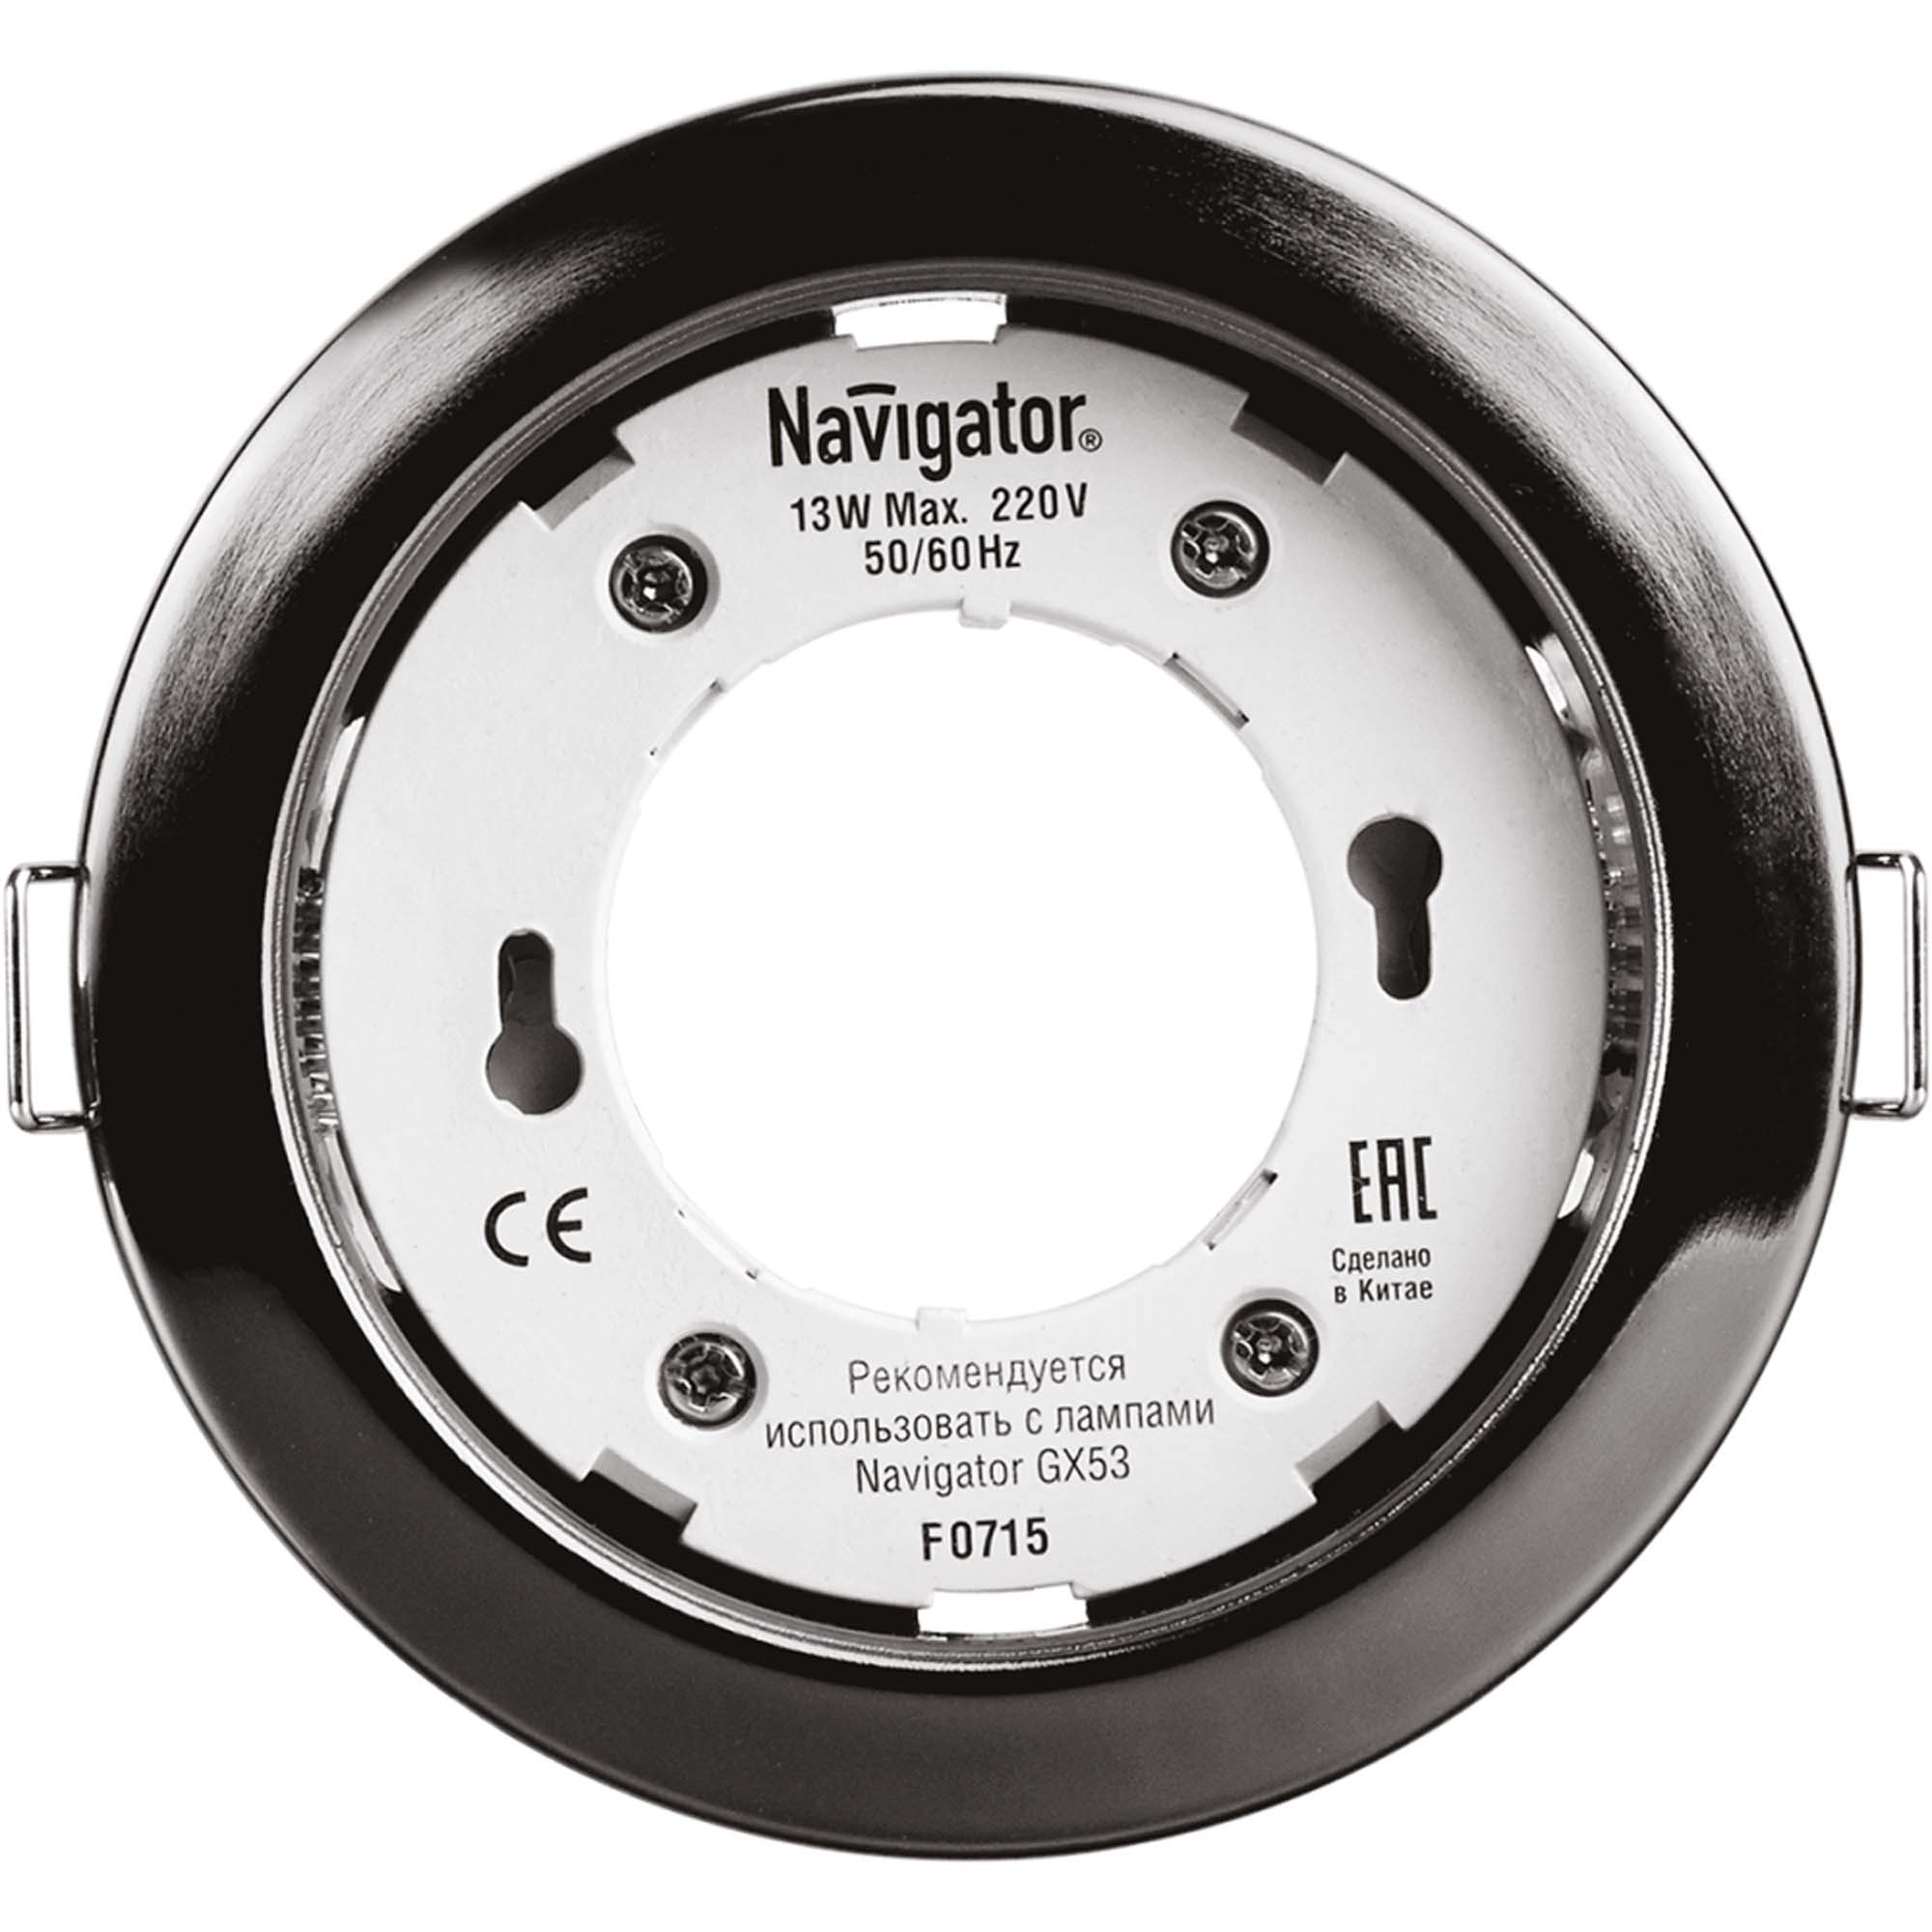 Светильник встраиваемый Navigator gx53-черный хром светильник метал черный хром 1 5m navigator навигатор 61520